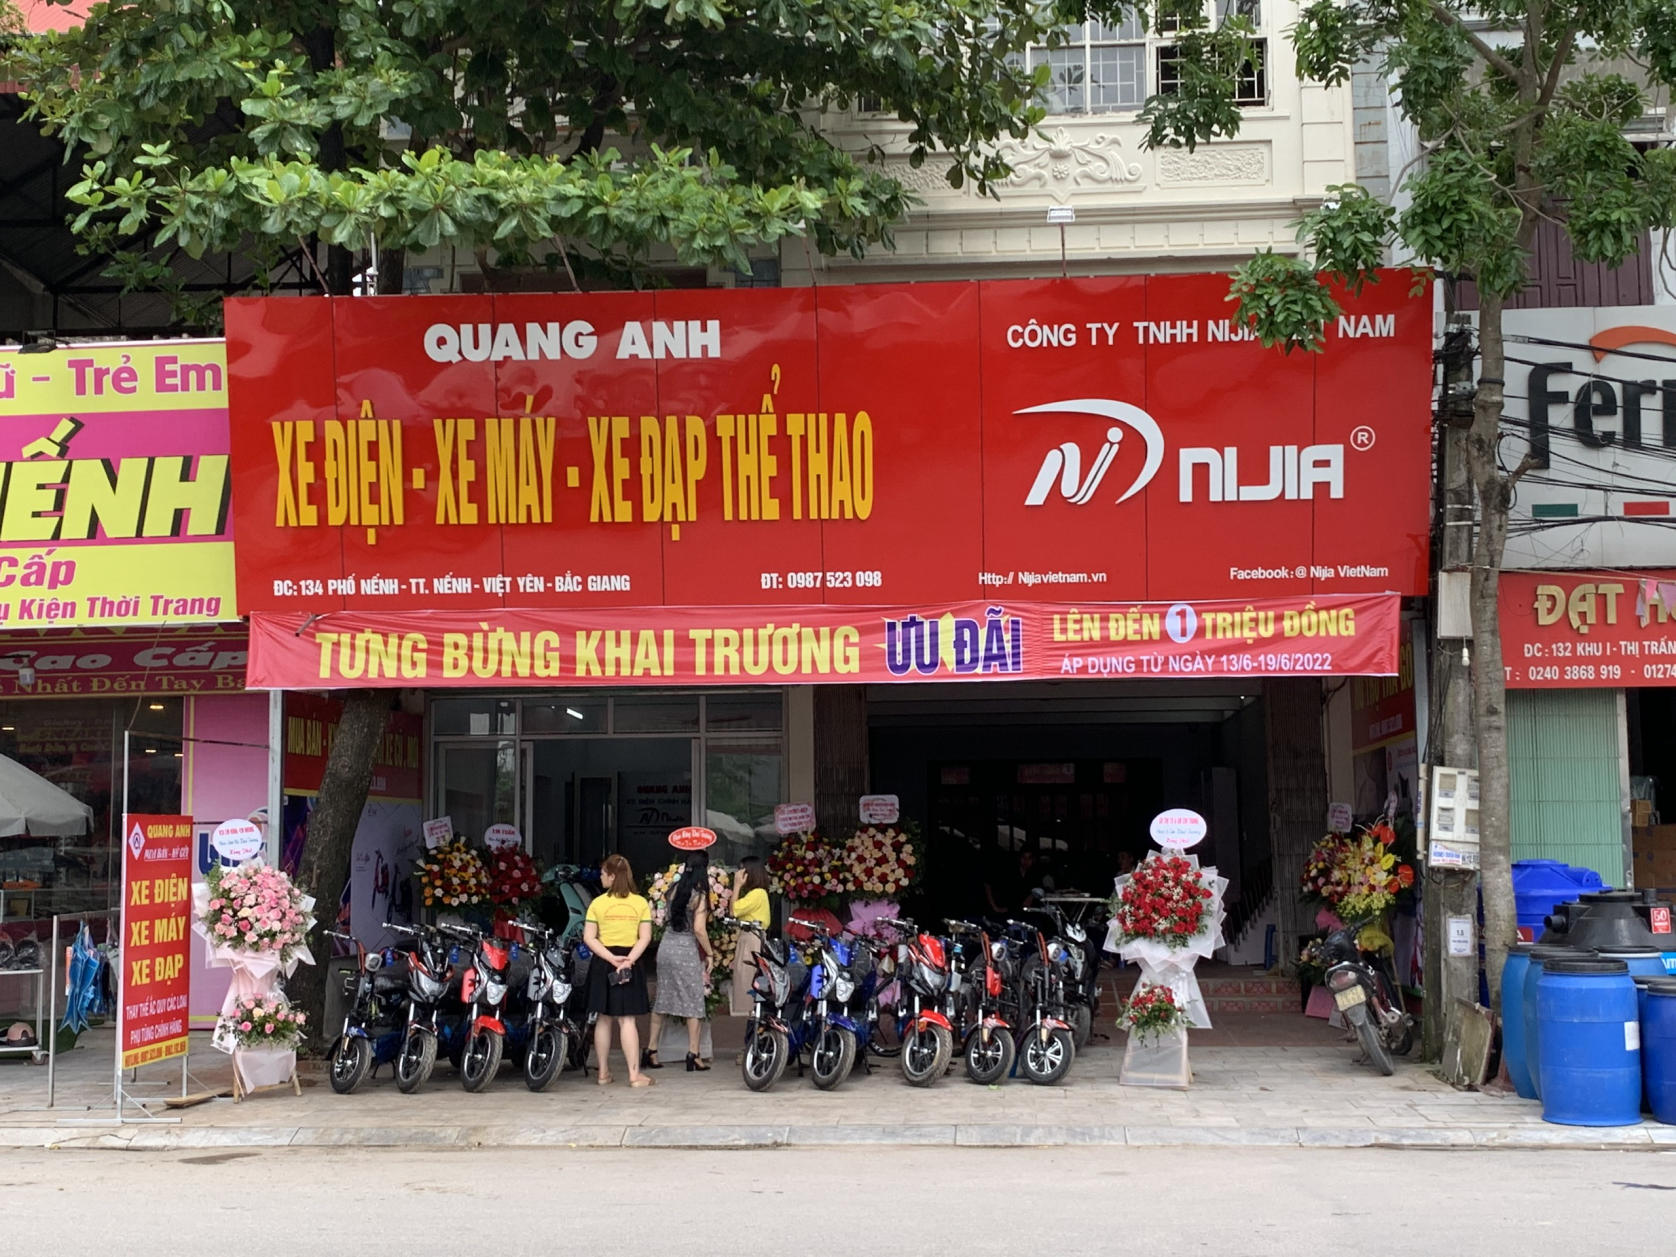 Tưng bừng khai trương đại lý Nijia Việt Nam